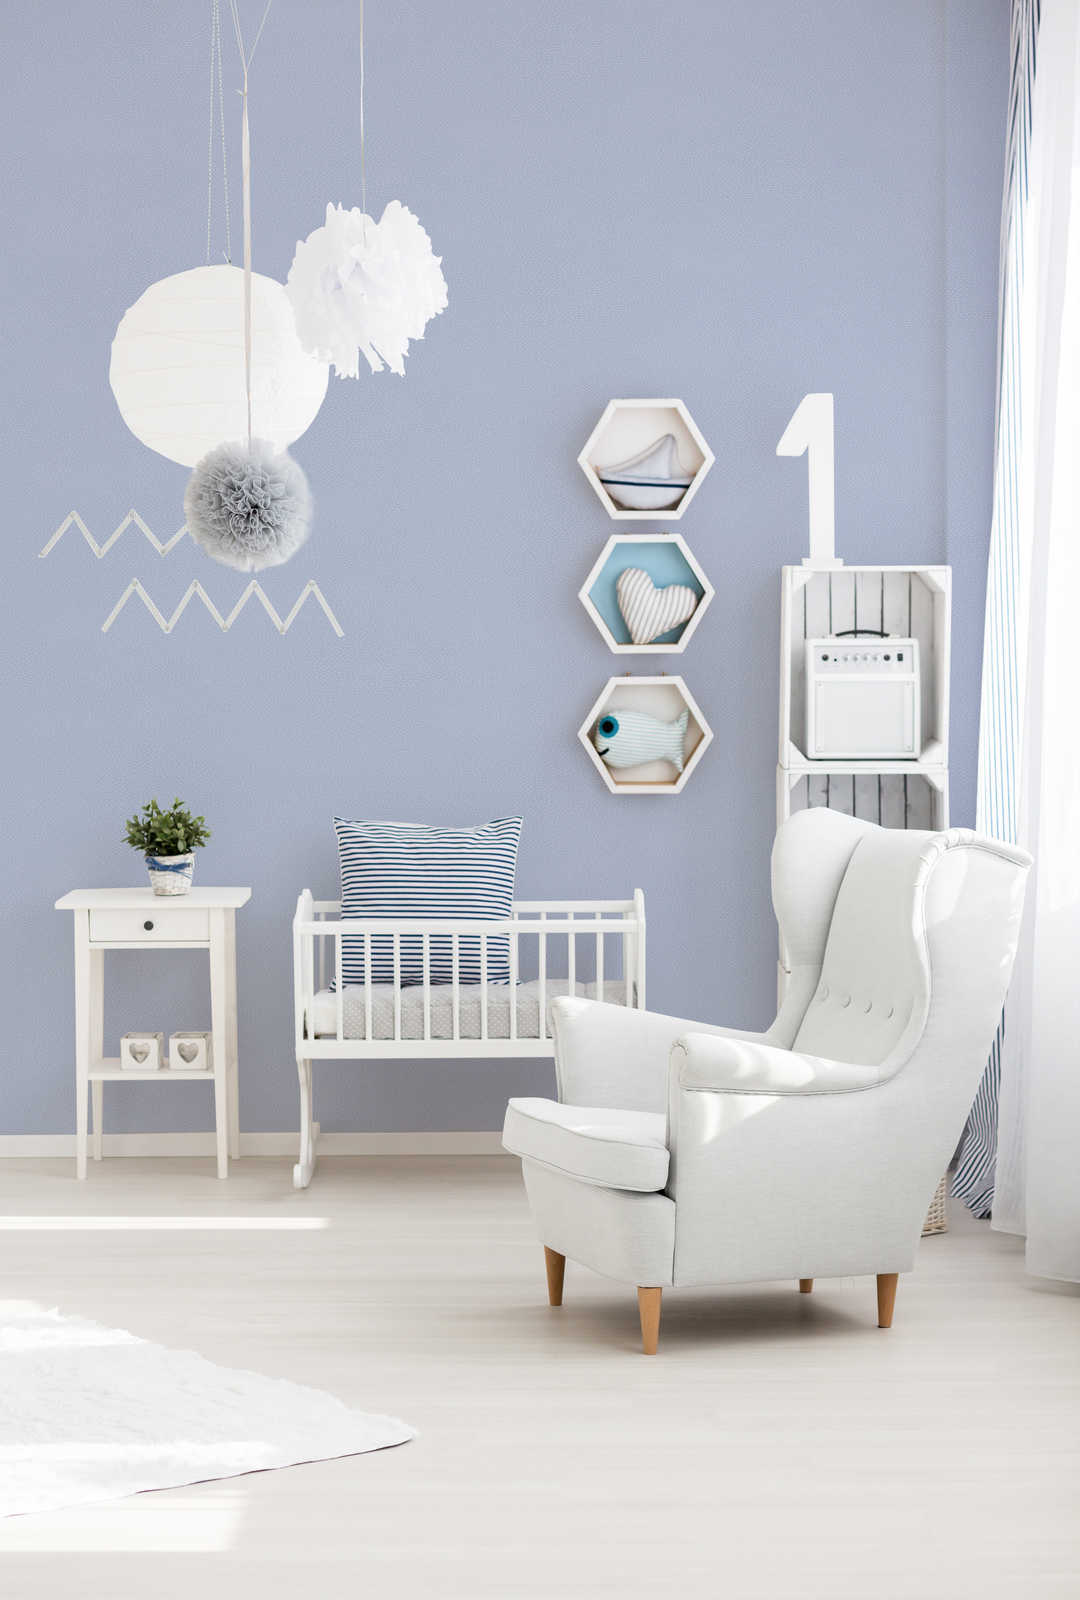             Kinderkamer behang horizontale lijnen - blauw, grijs, wit
        